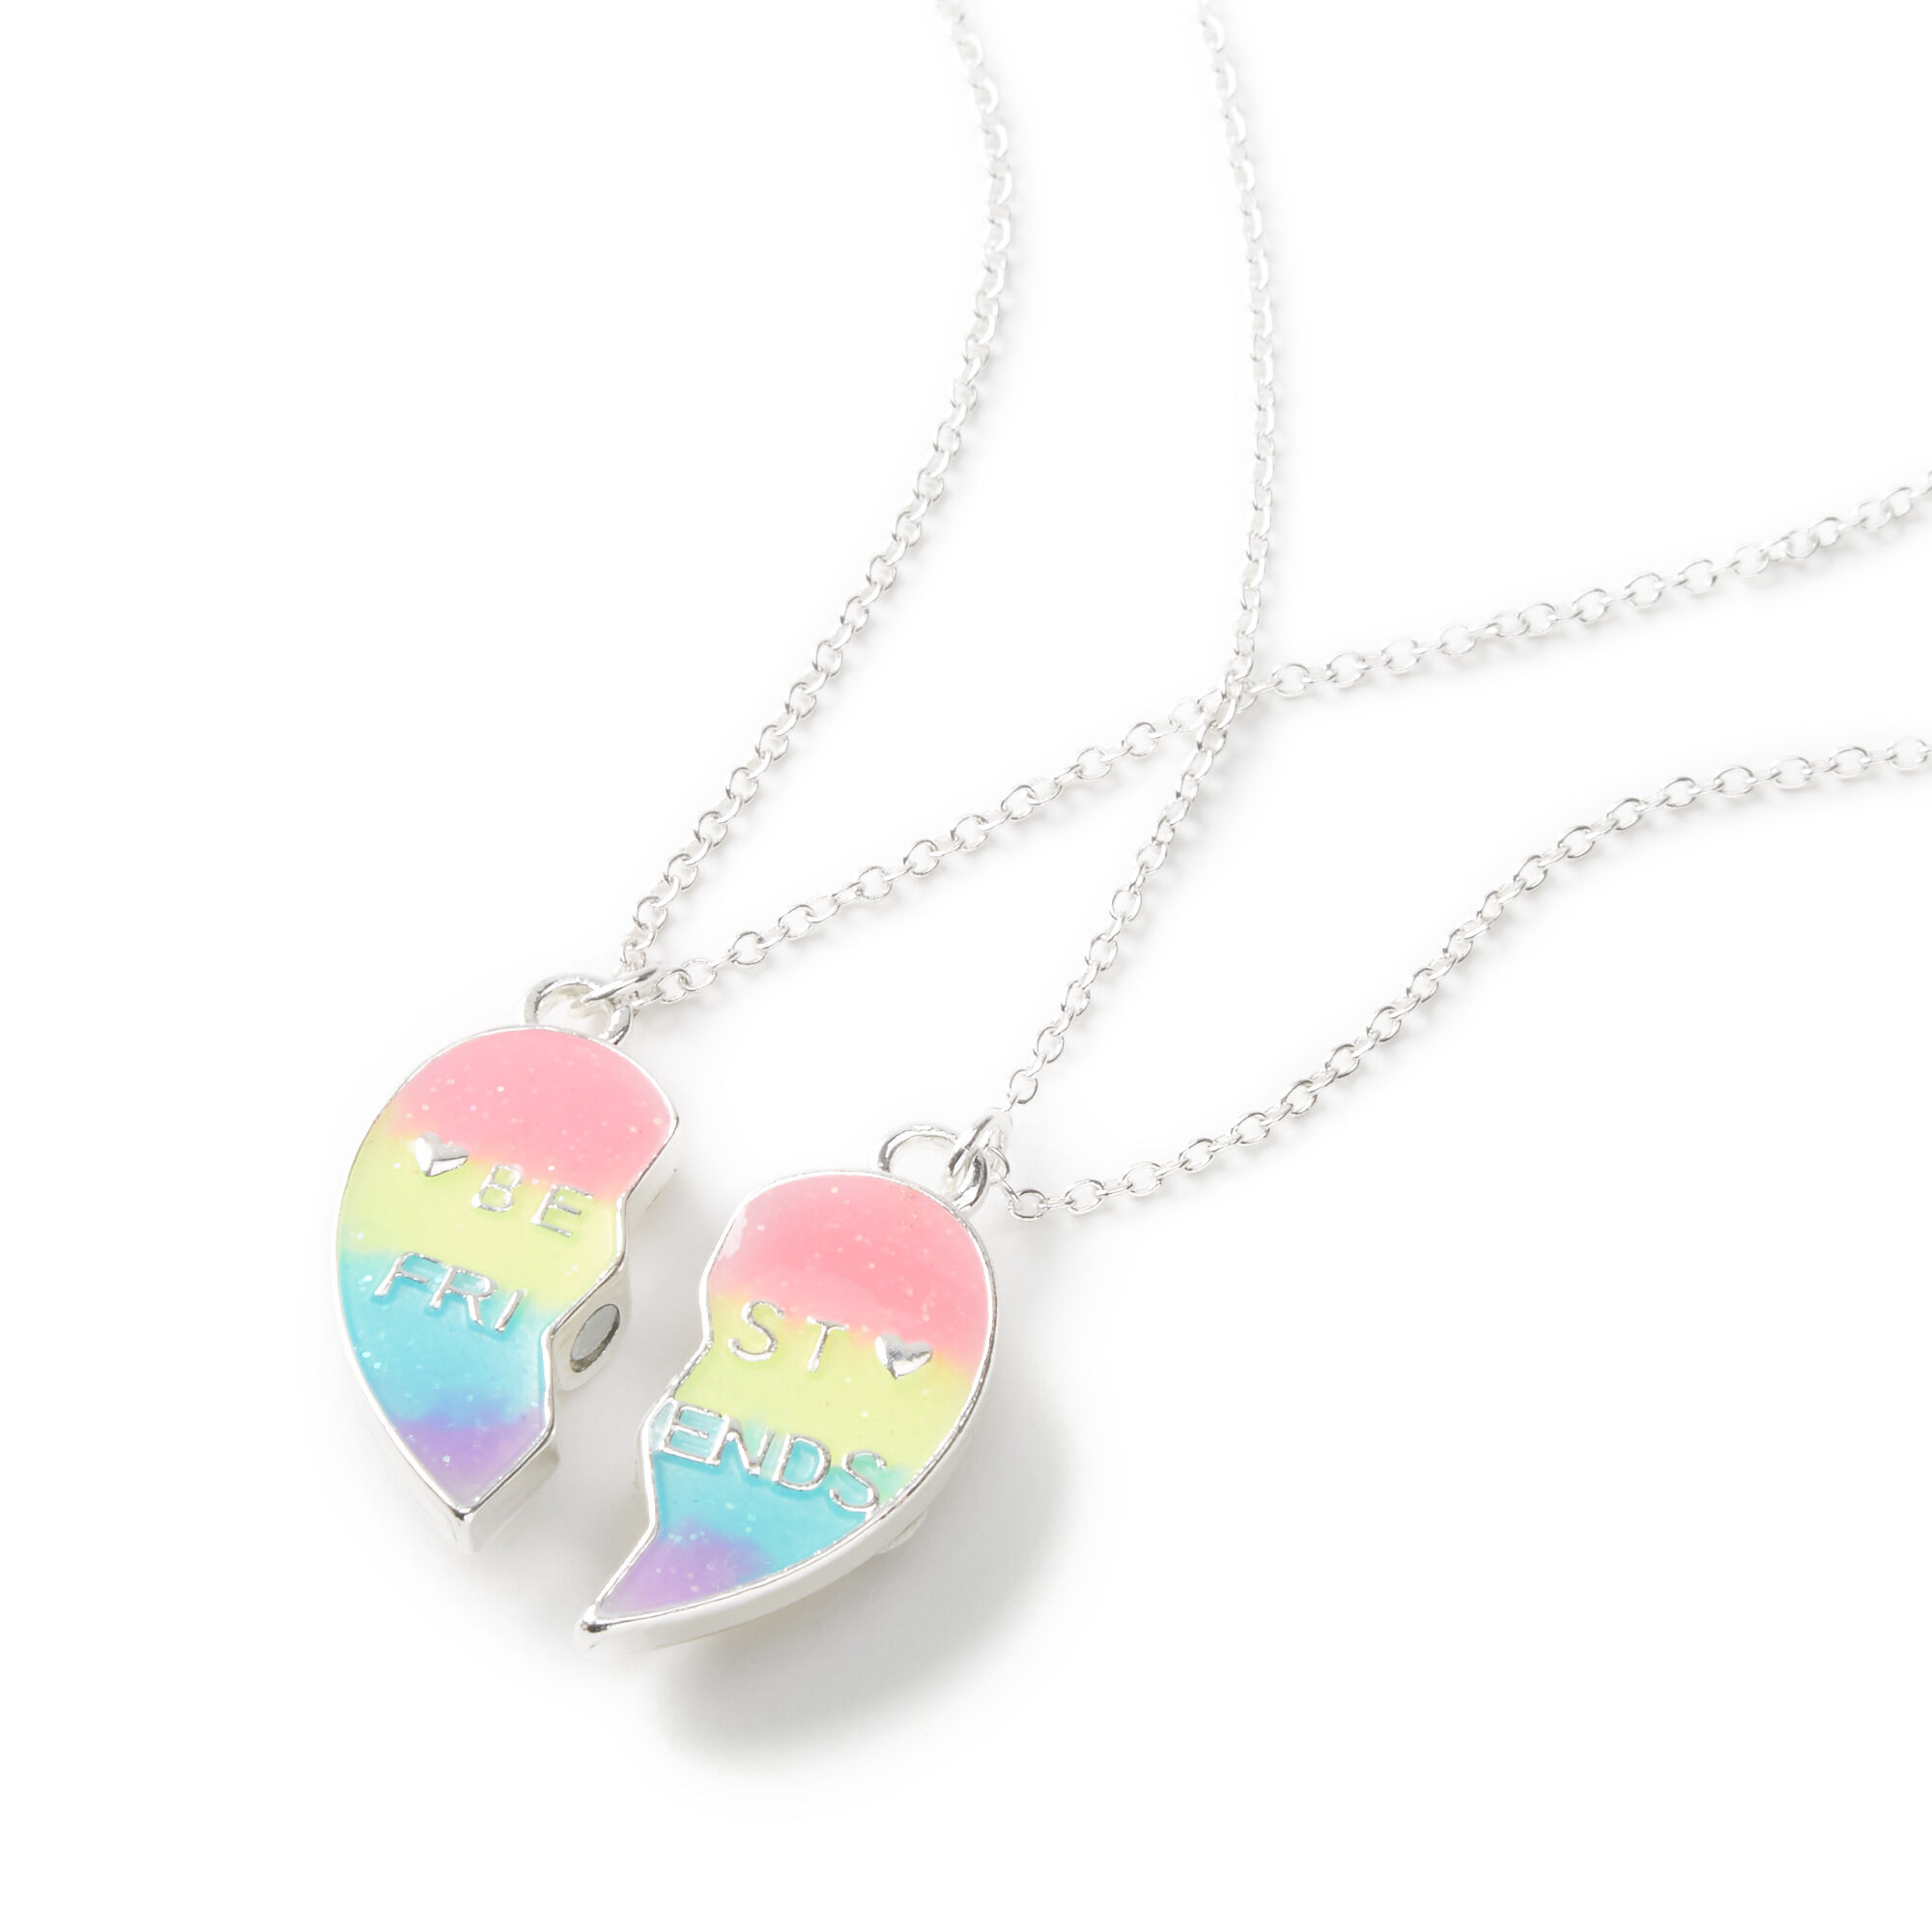 Best Friends Bright Tie Dye Split Heart Pendant Necklaces - 2 Pack | Bff  necklaces, Best friend necklaces, Friend necklaces